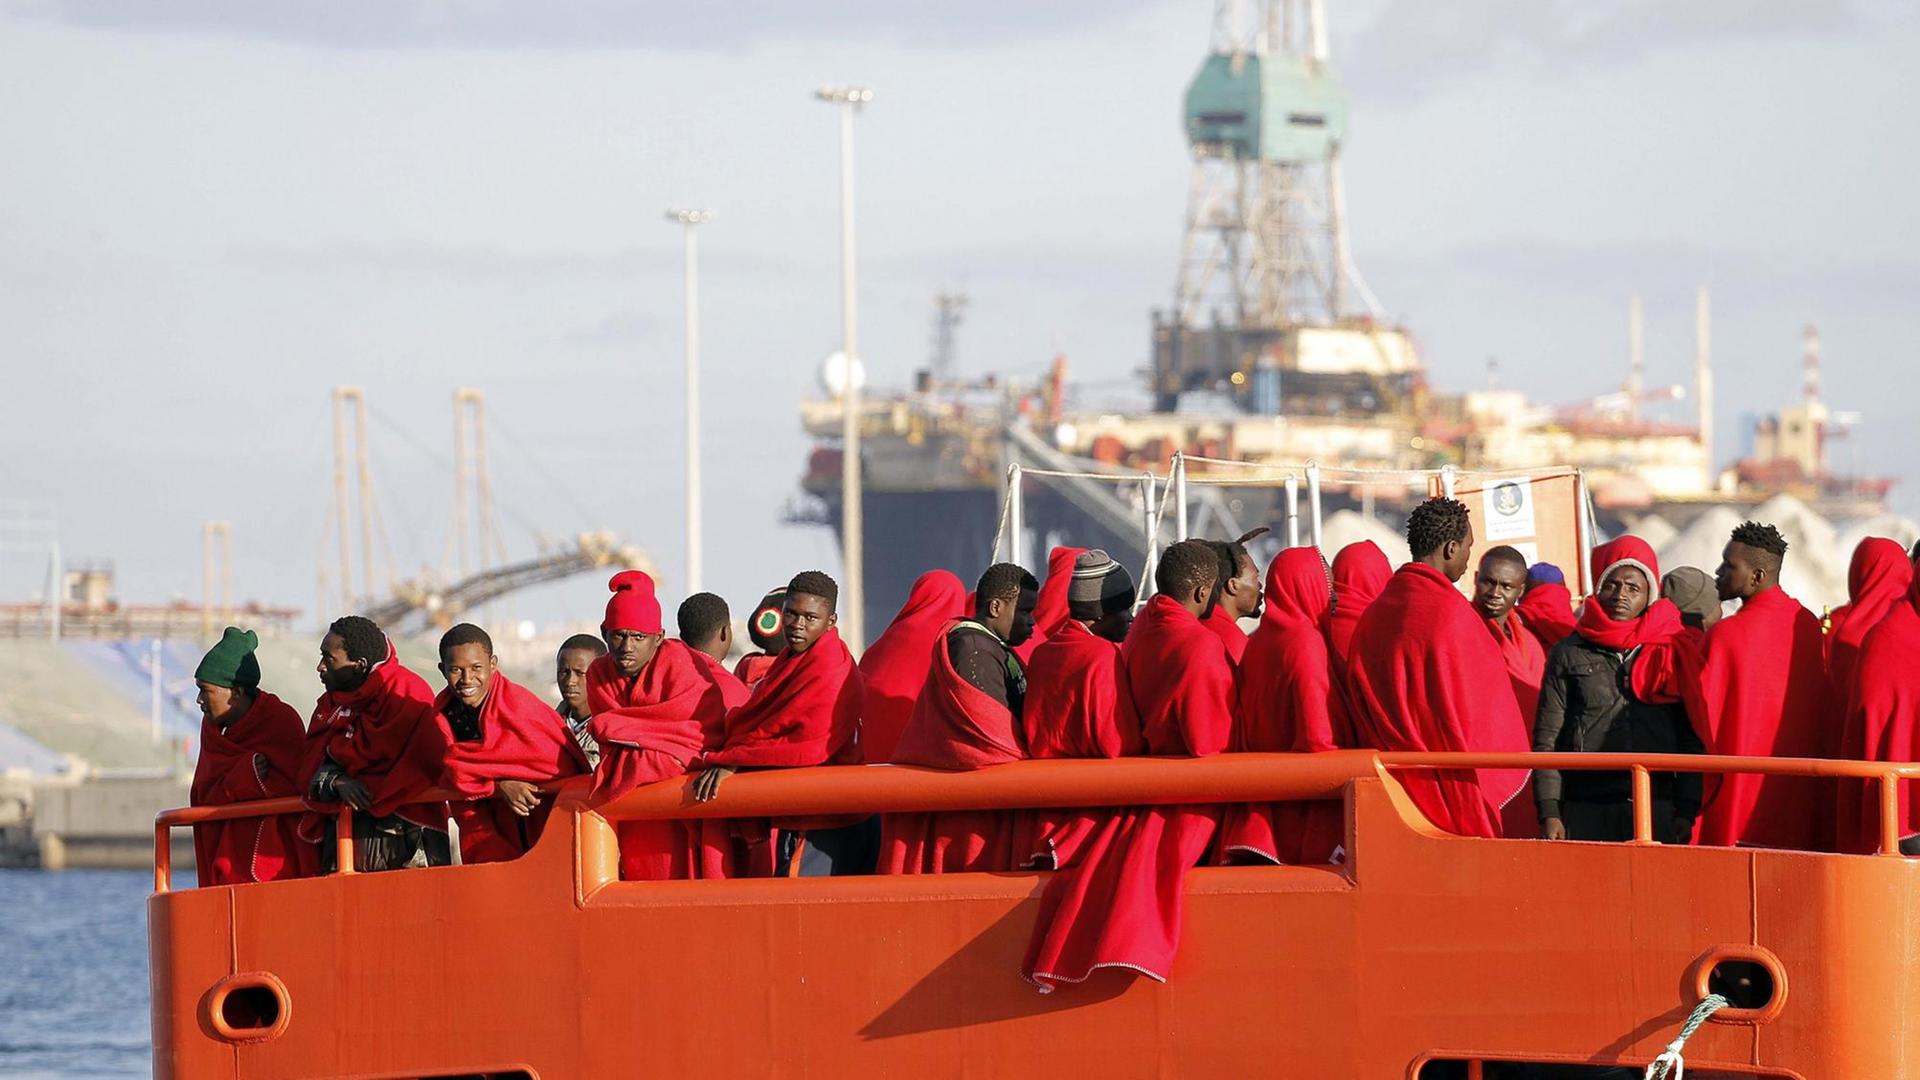 Gerettete Flüchtlinge aus der Subsahara stehen auf einem Boot der spanischen Küstenwache, eingewickelt in rote Decken.